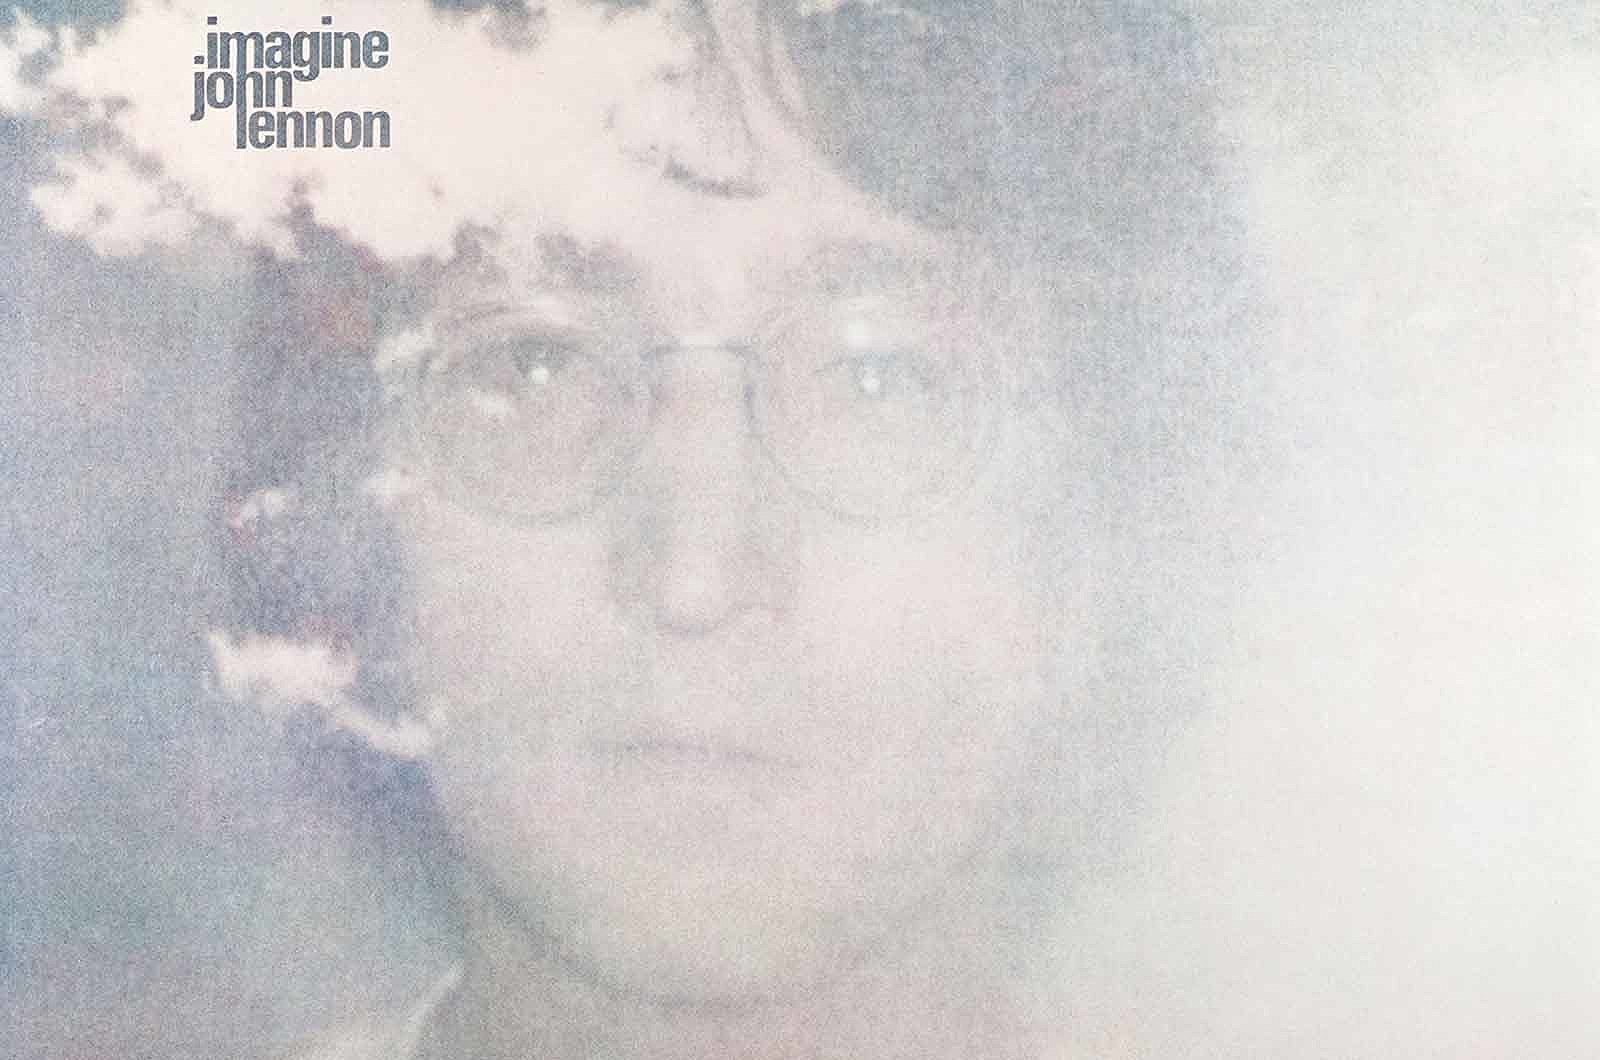 John Lennon imagine